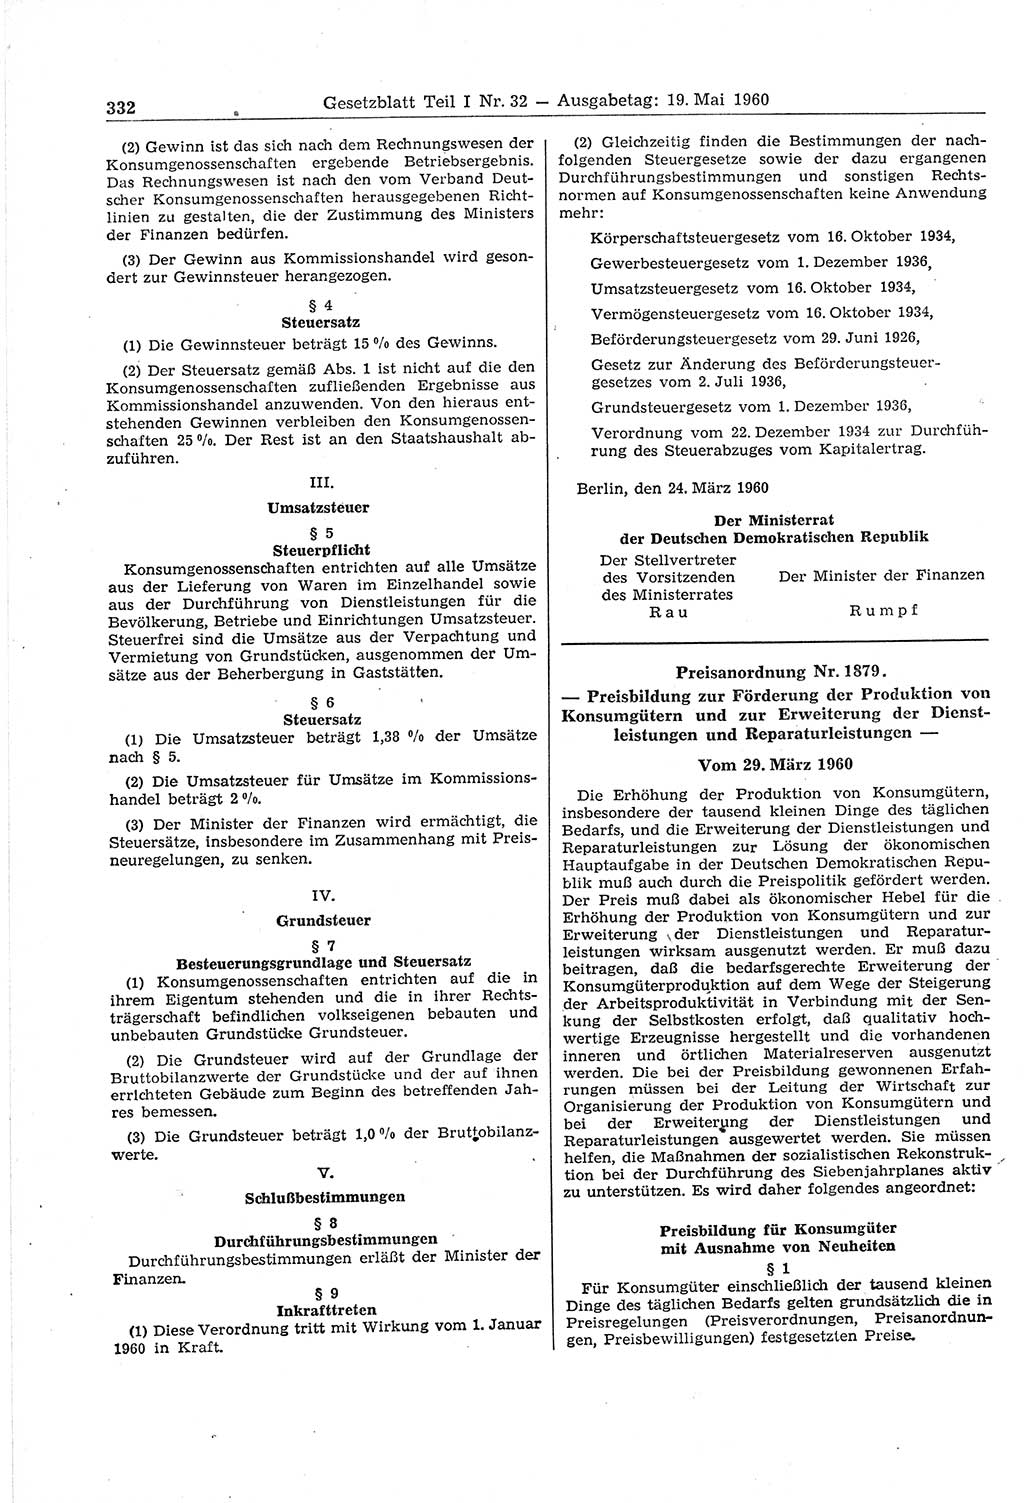 Gesetzblatt (GBl.) der Deutschen Demokratischen Republik (DDR) Teil Ⅰ 1960, Seite 332 (GBl. DDR Ⅰ 1960, S. 332)